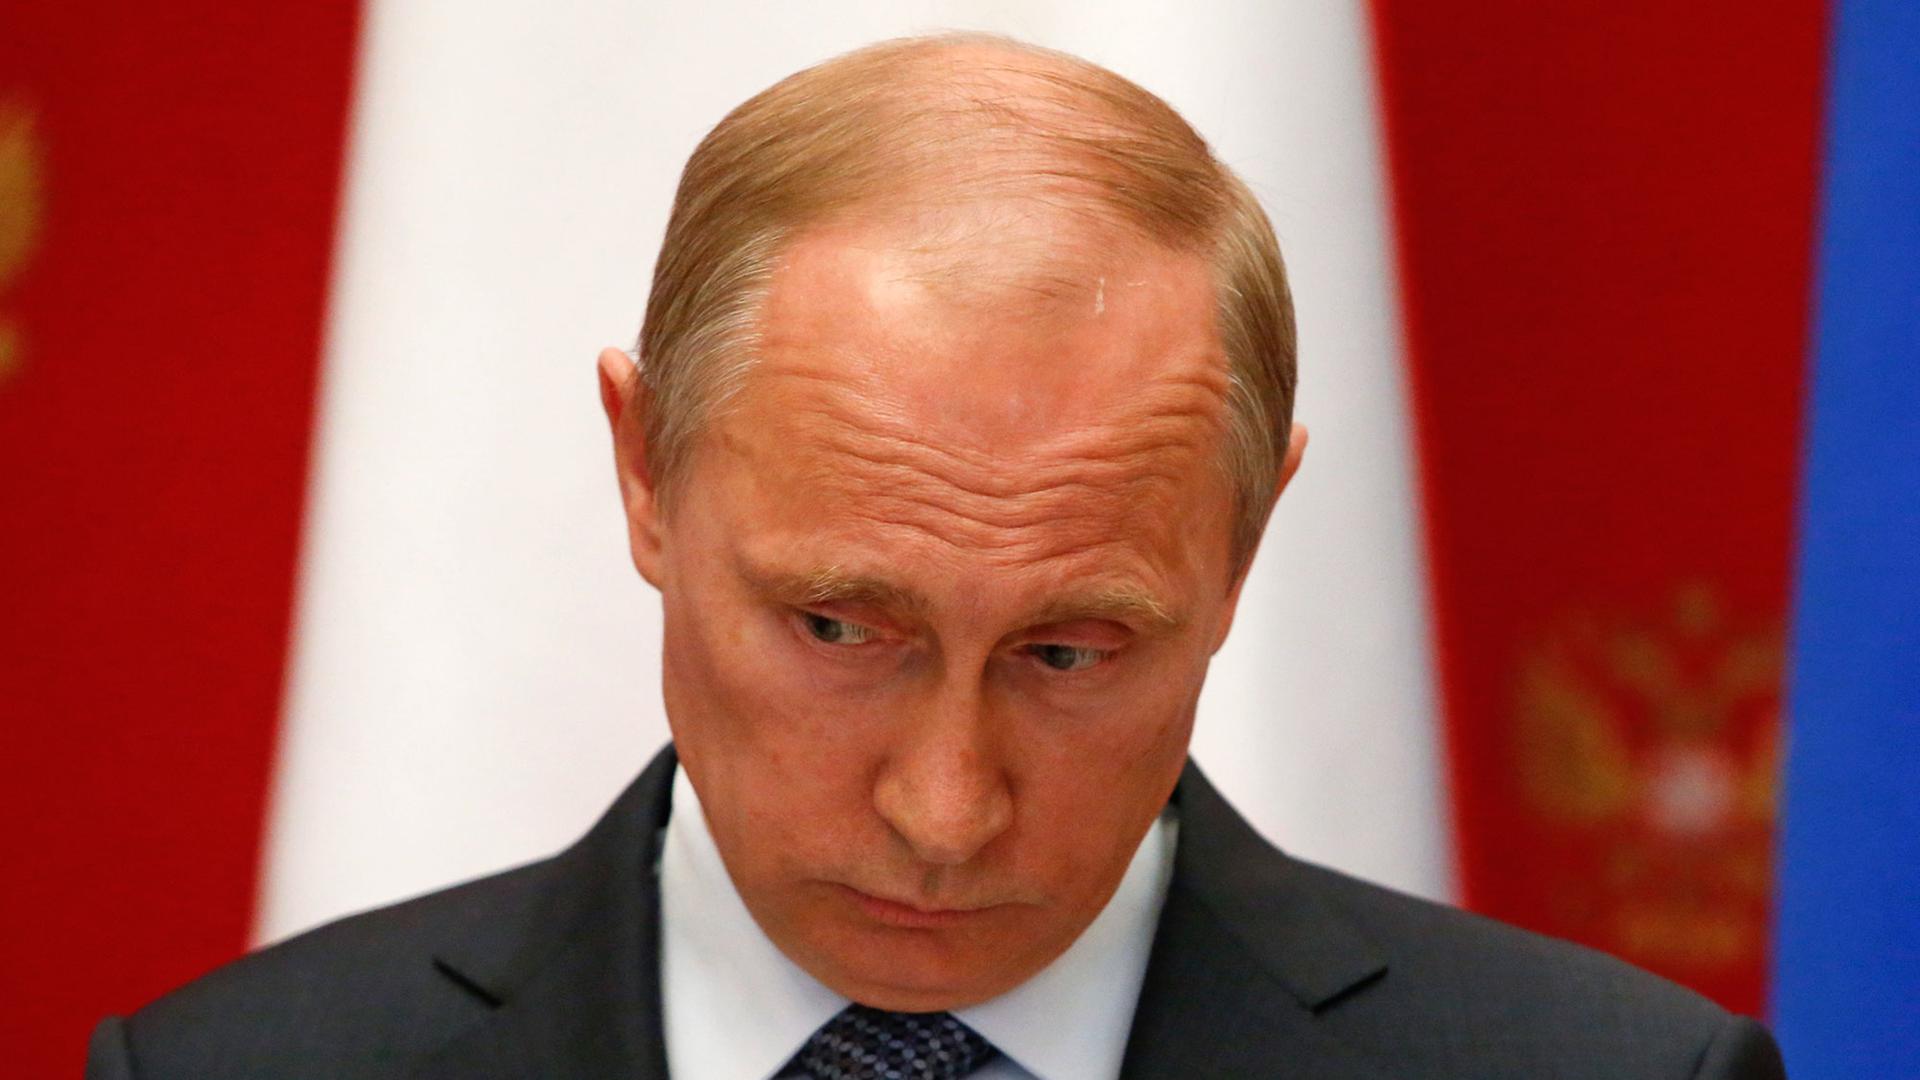 Russlands Präsident Wladimir Putin legt seine Stirn in Falten und senkt nachdenklich den Blick während einer Pressekonferenz nach dem Treffen mit dem Schweizer Präsidenten Didier Burkhalter im Kreml in Moskau, Russland, am 07.05.2014.